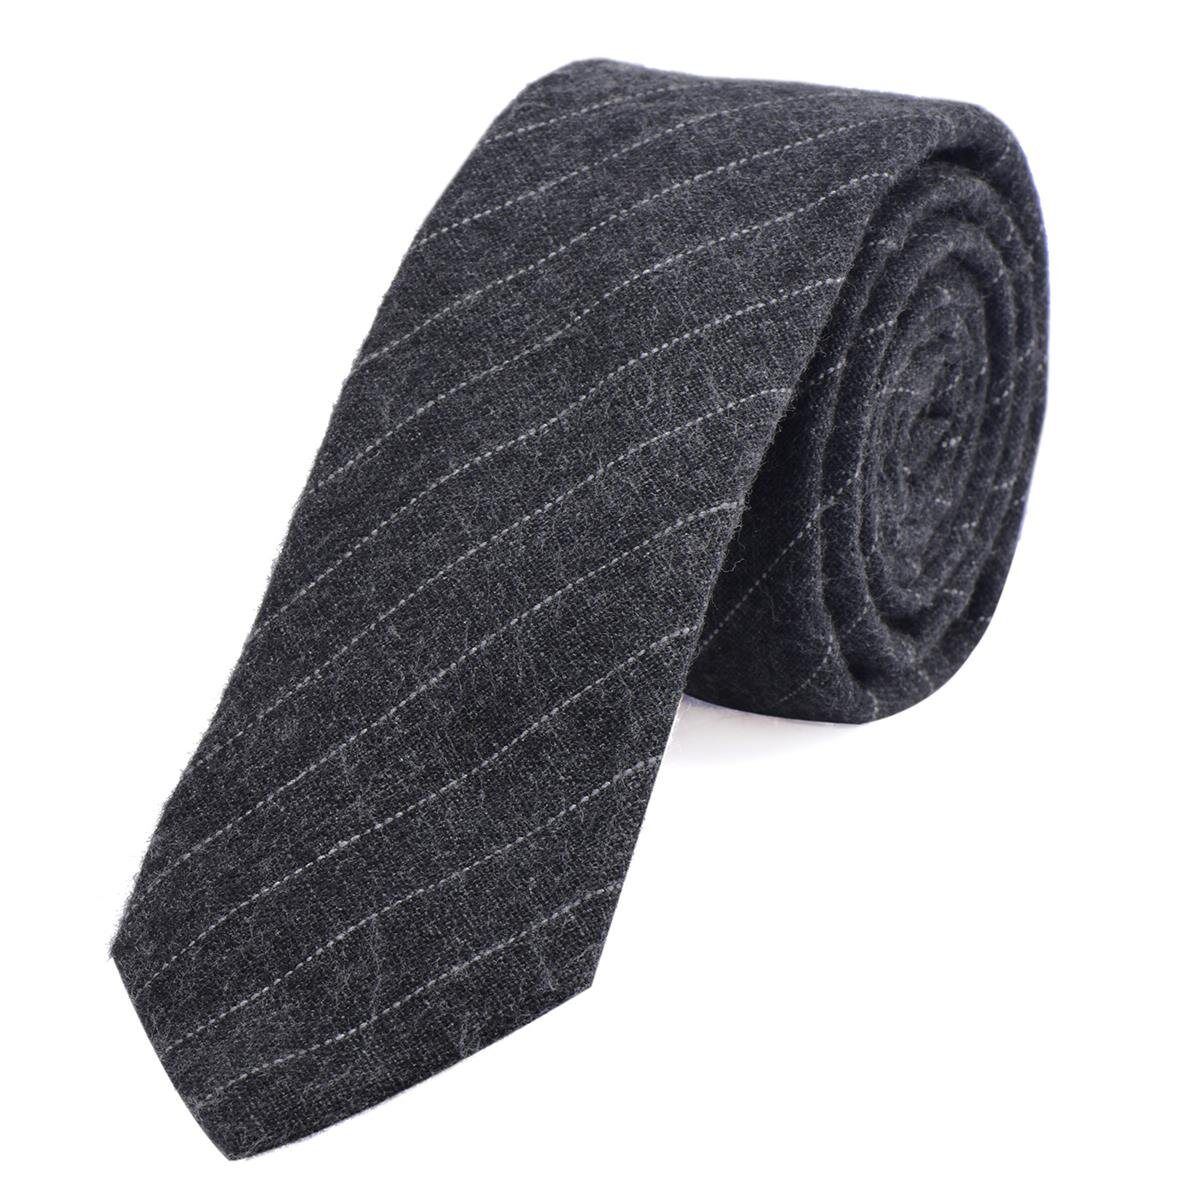 DonDon Krawatte »Herren Krawatte 6 cm mit Karos oder Streifen« (1-St) Baumwolle, kariert oder gestreift, für Büro oder festliche Veranstaltungen, dunkelgrau gestreift